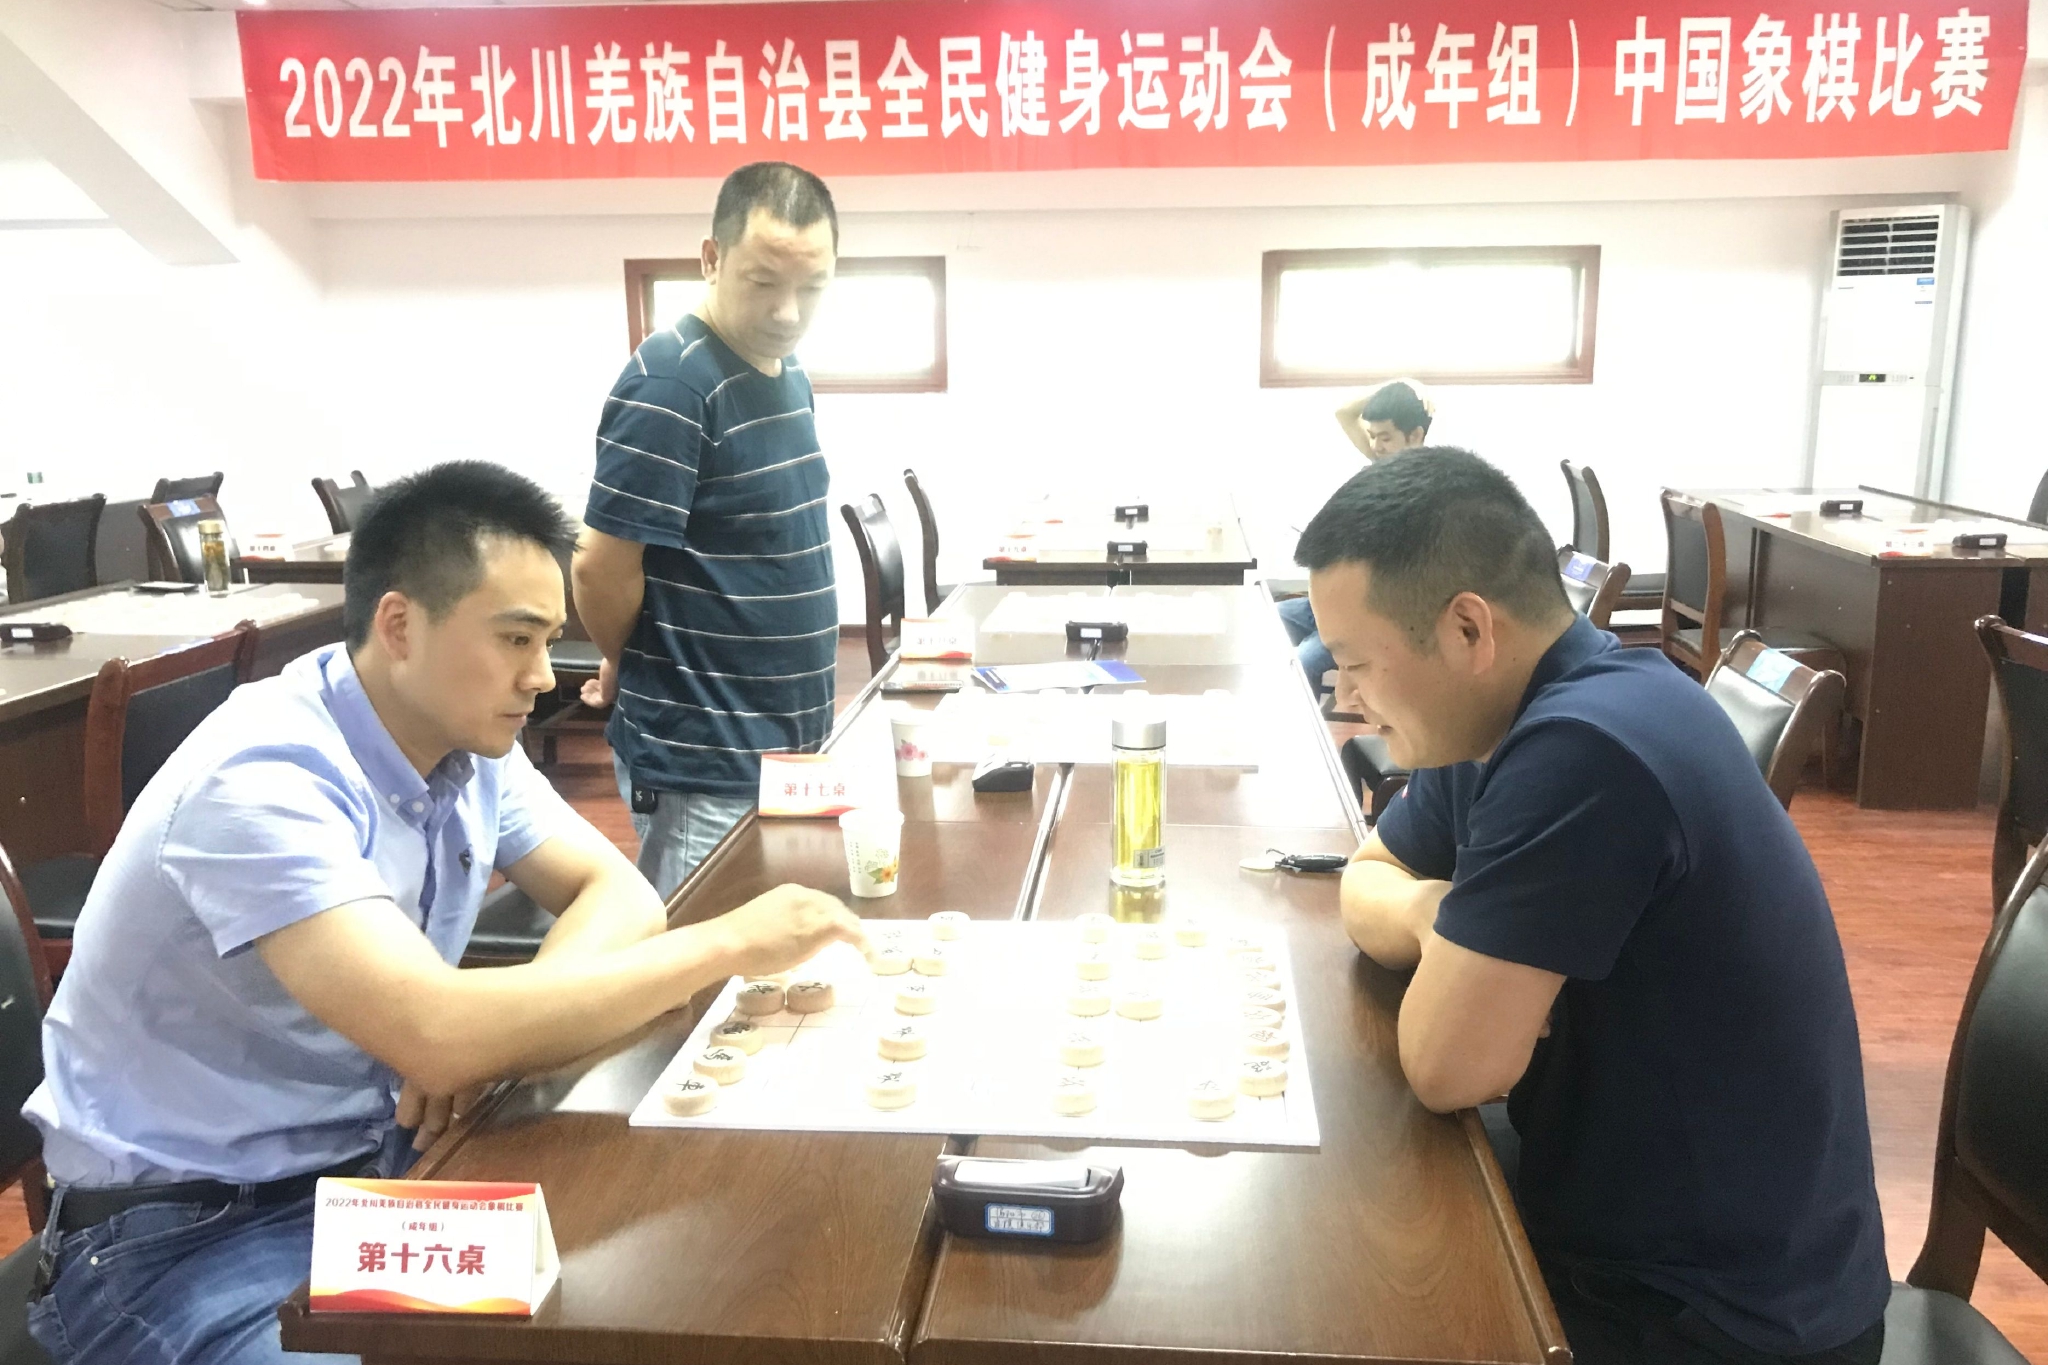 绵阳北川全民健身运动会成年组中国象棋比赛25日开幕